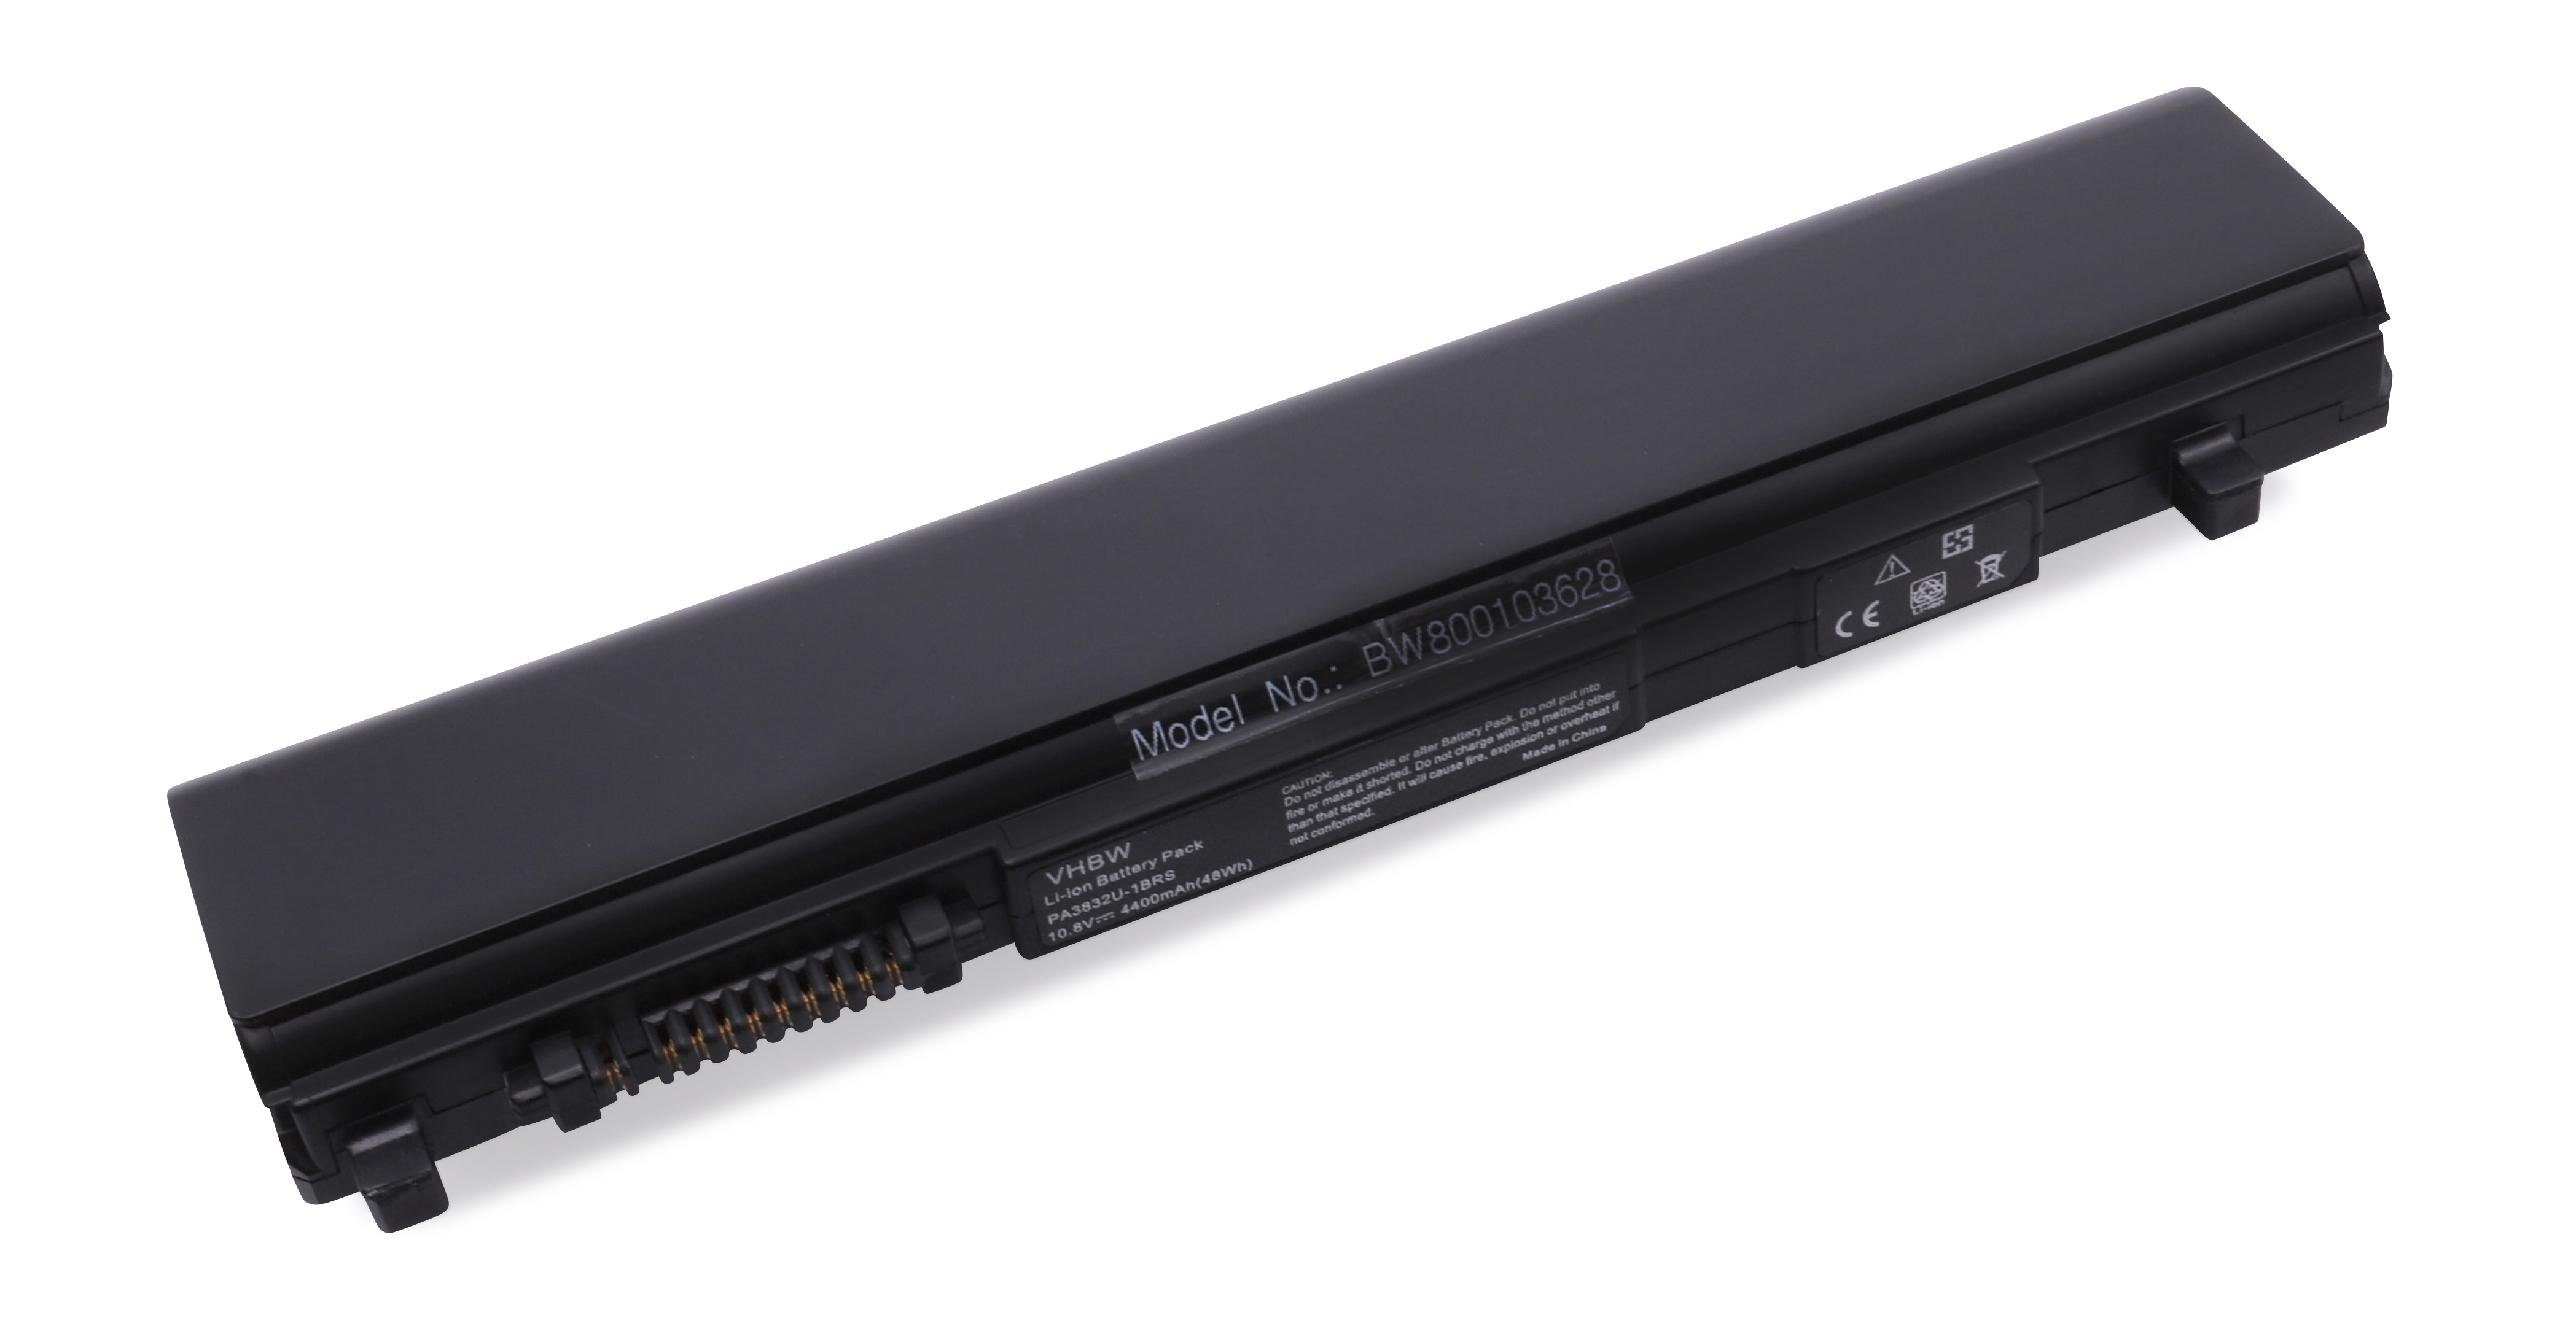 vhbw passend für Toshiba Dynabook RX3 SN266E/3HD, RX3 TM226Y/3HD, RX3 Laptop-Akku 4400 mAh